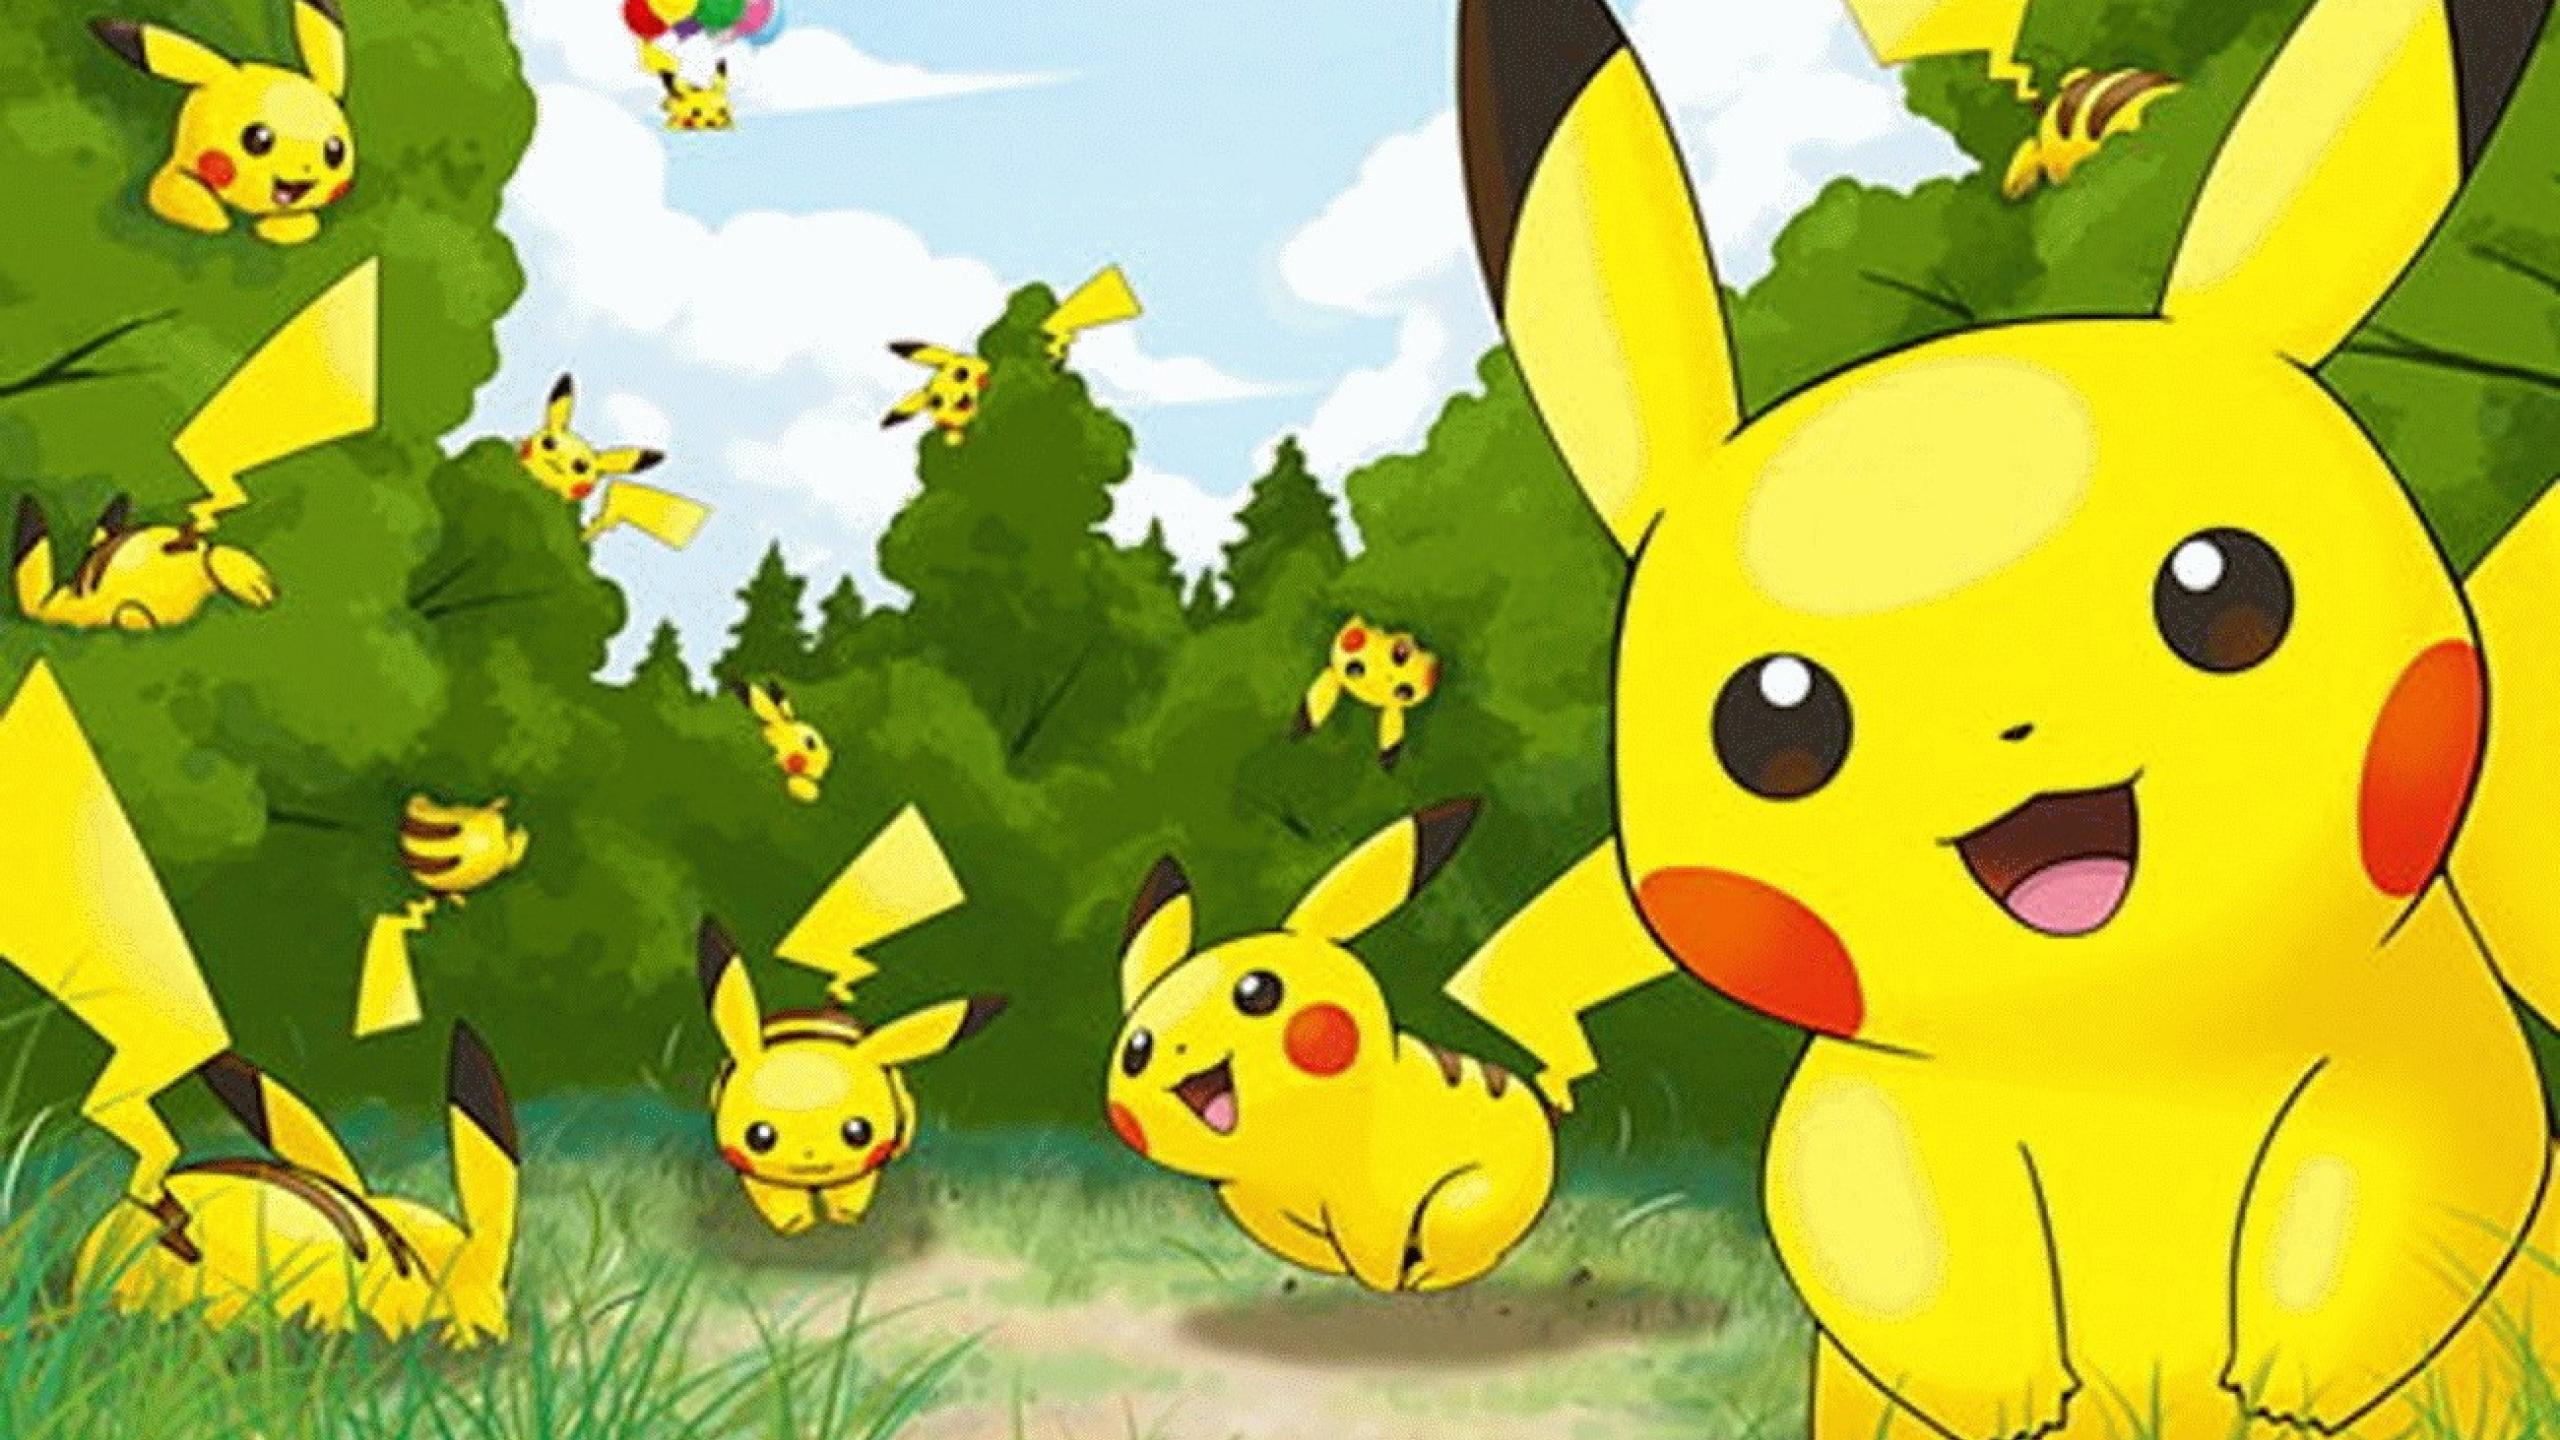 Desktop Pikachu Wallpaper